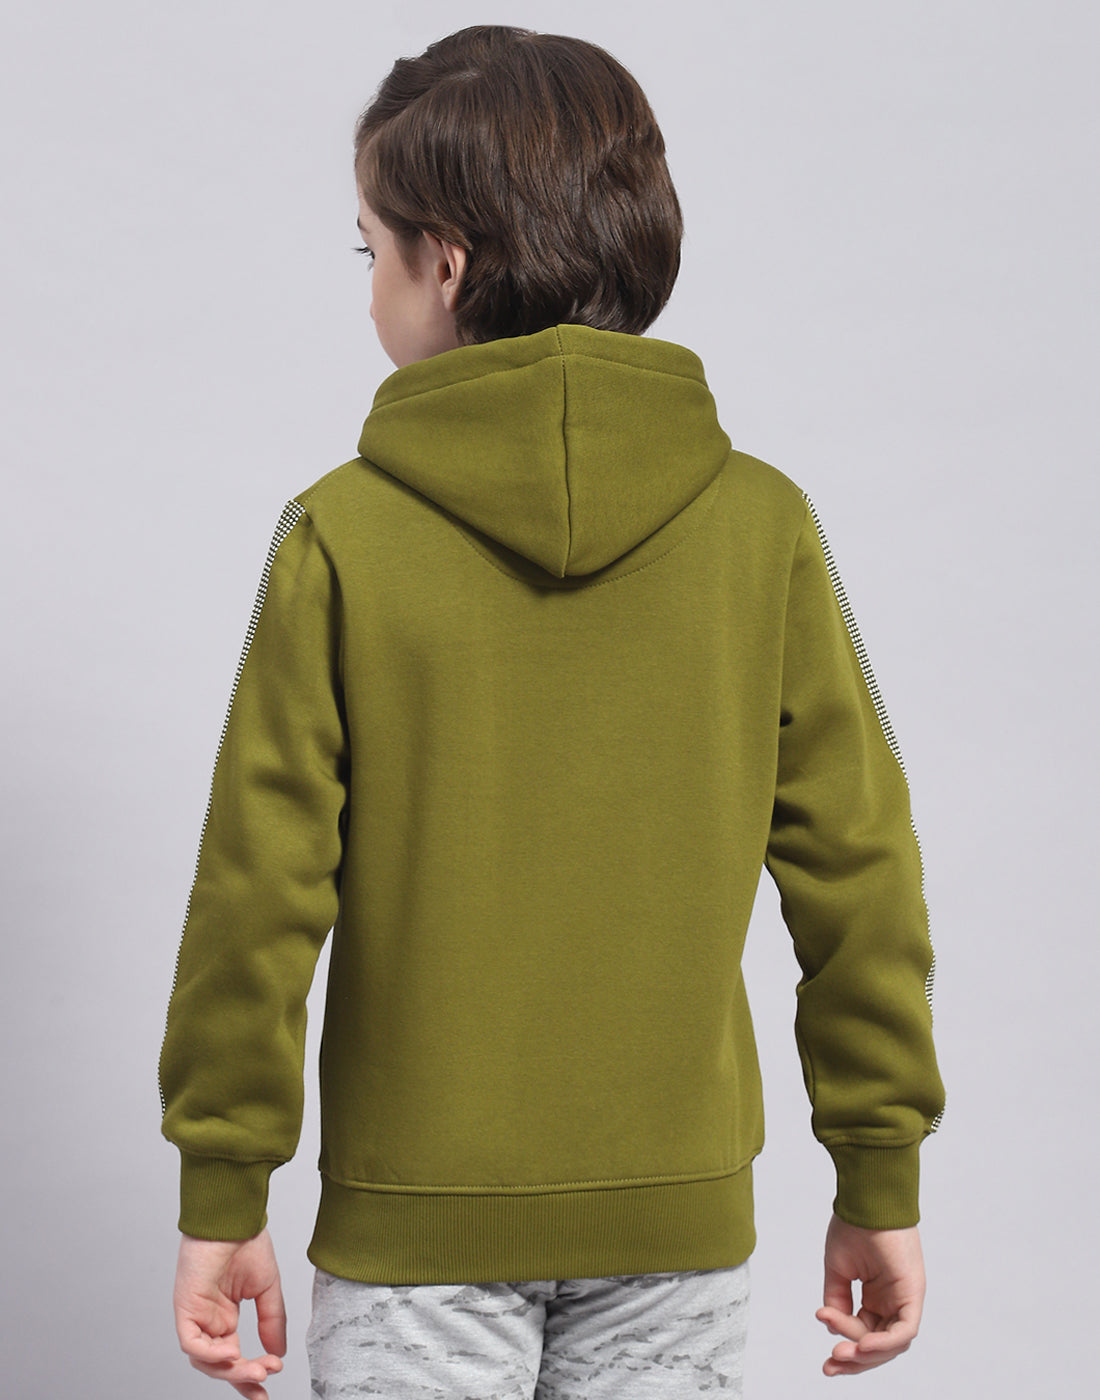 Boys Olive Printed Hooded Full Sleeve Sweatshirt